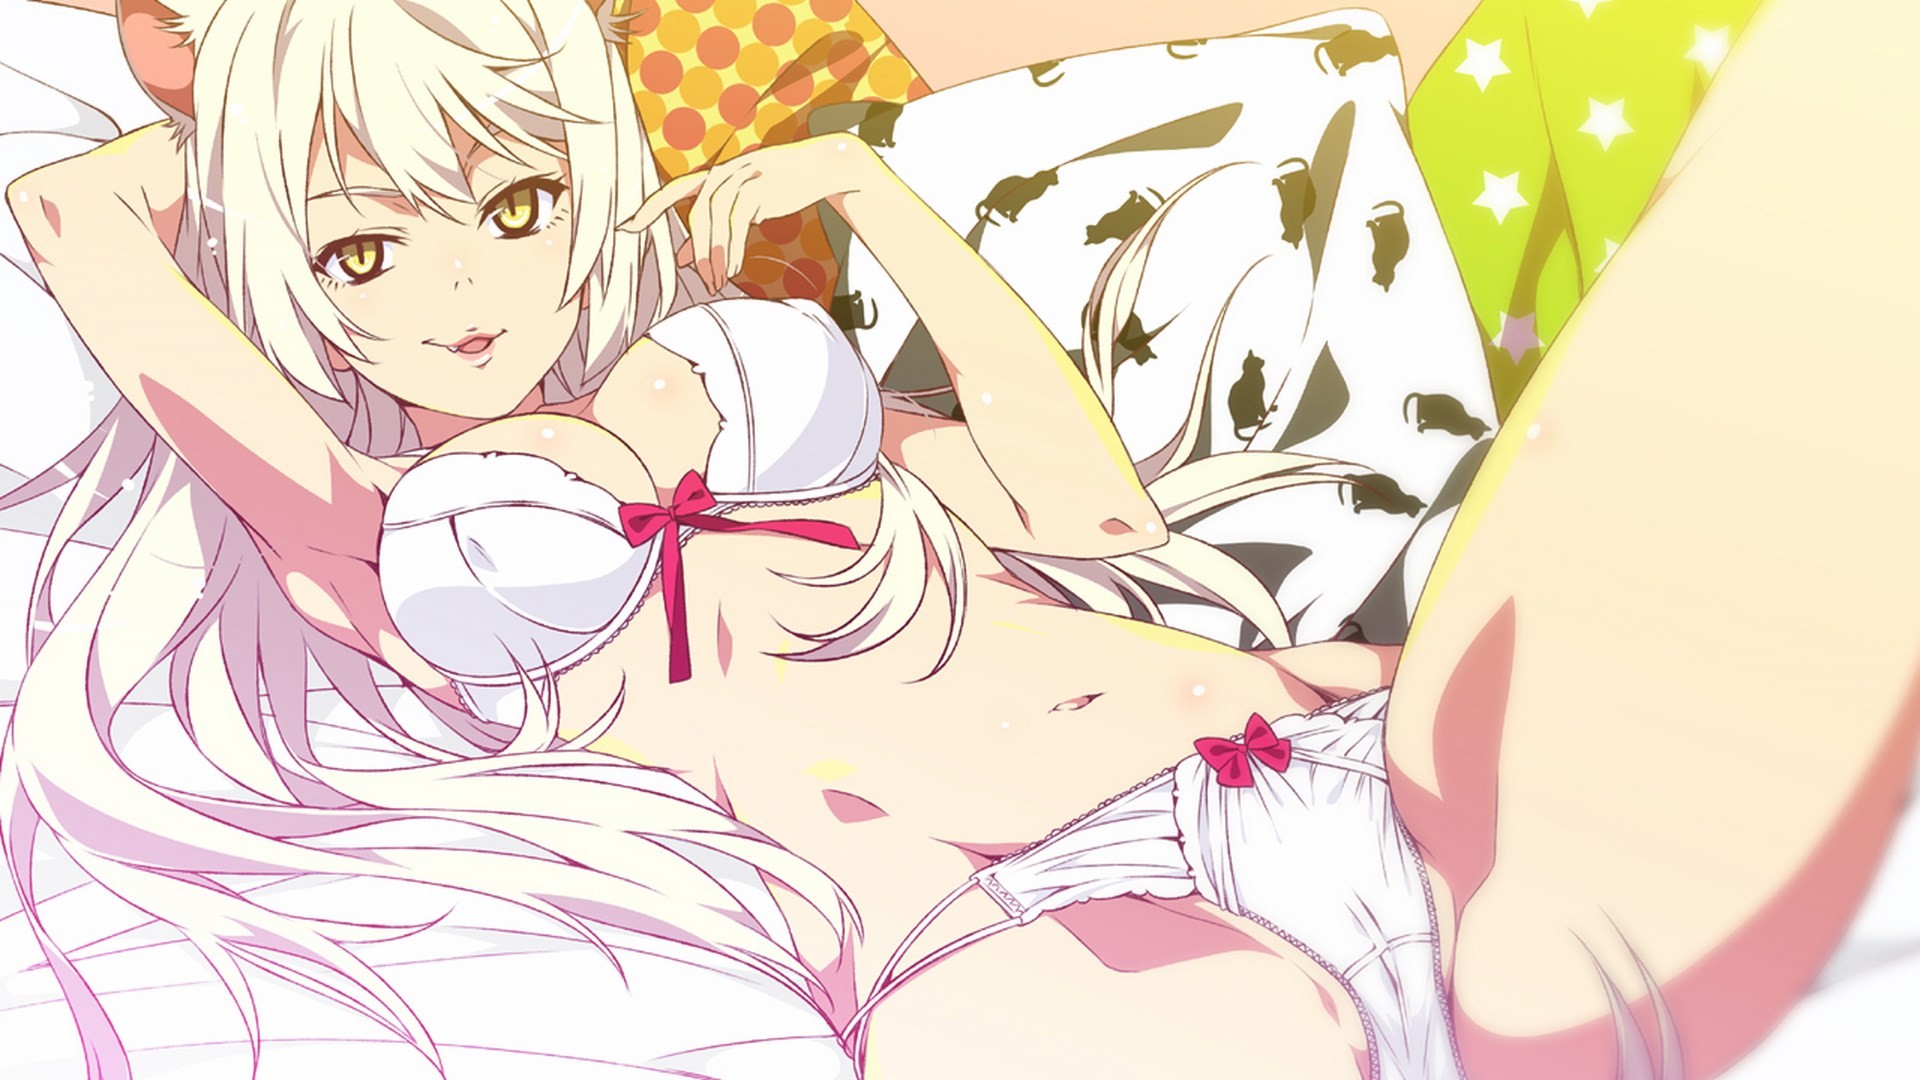 Anime girls spread in panties